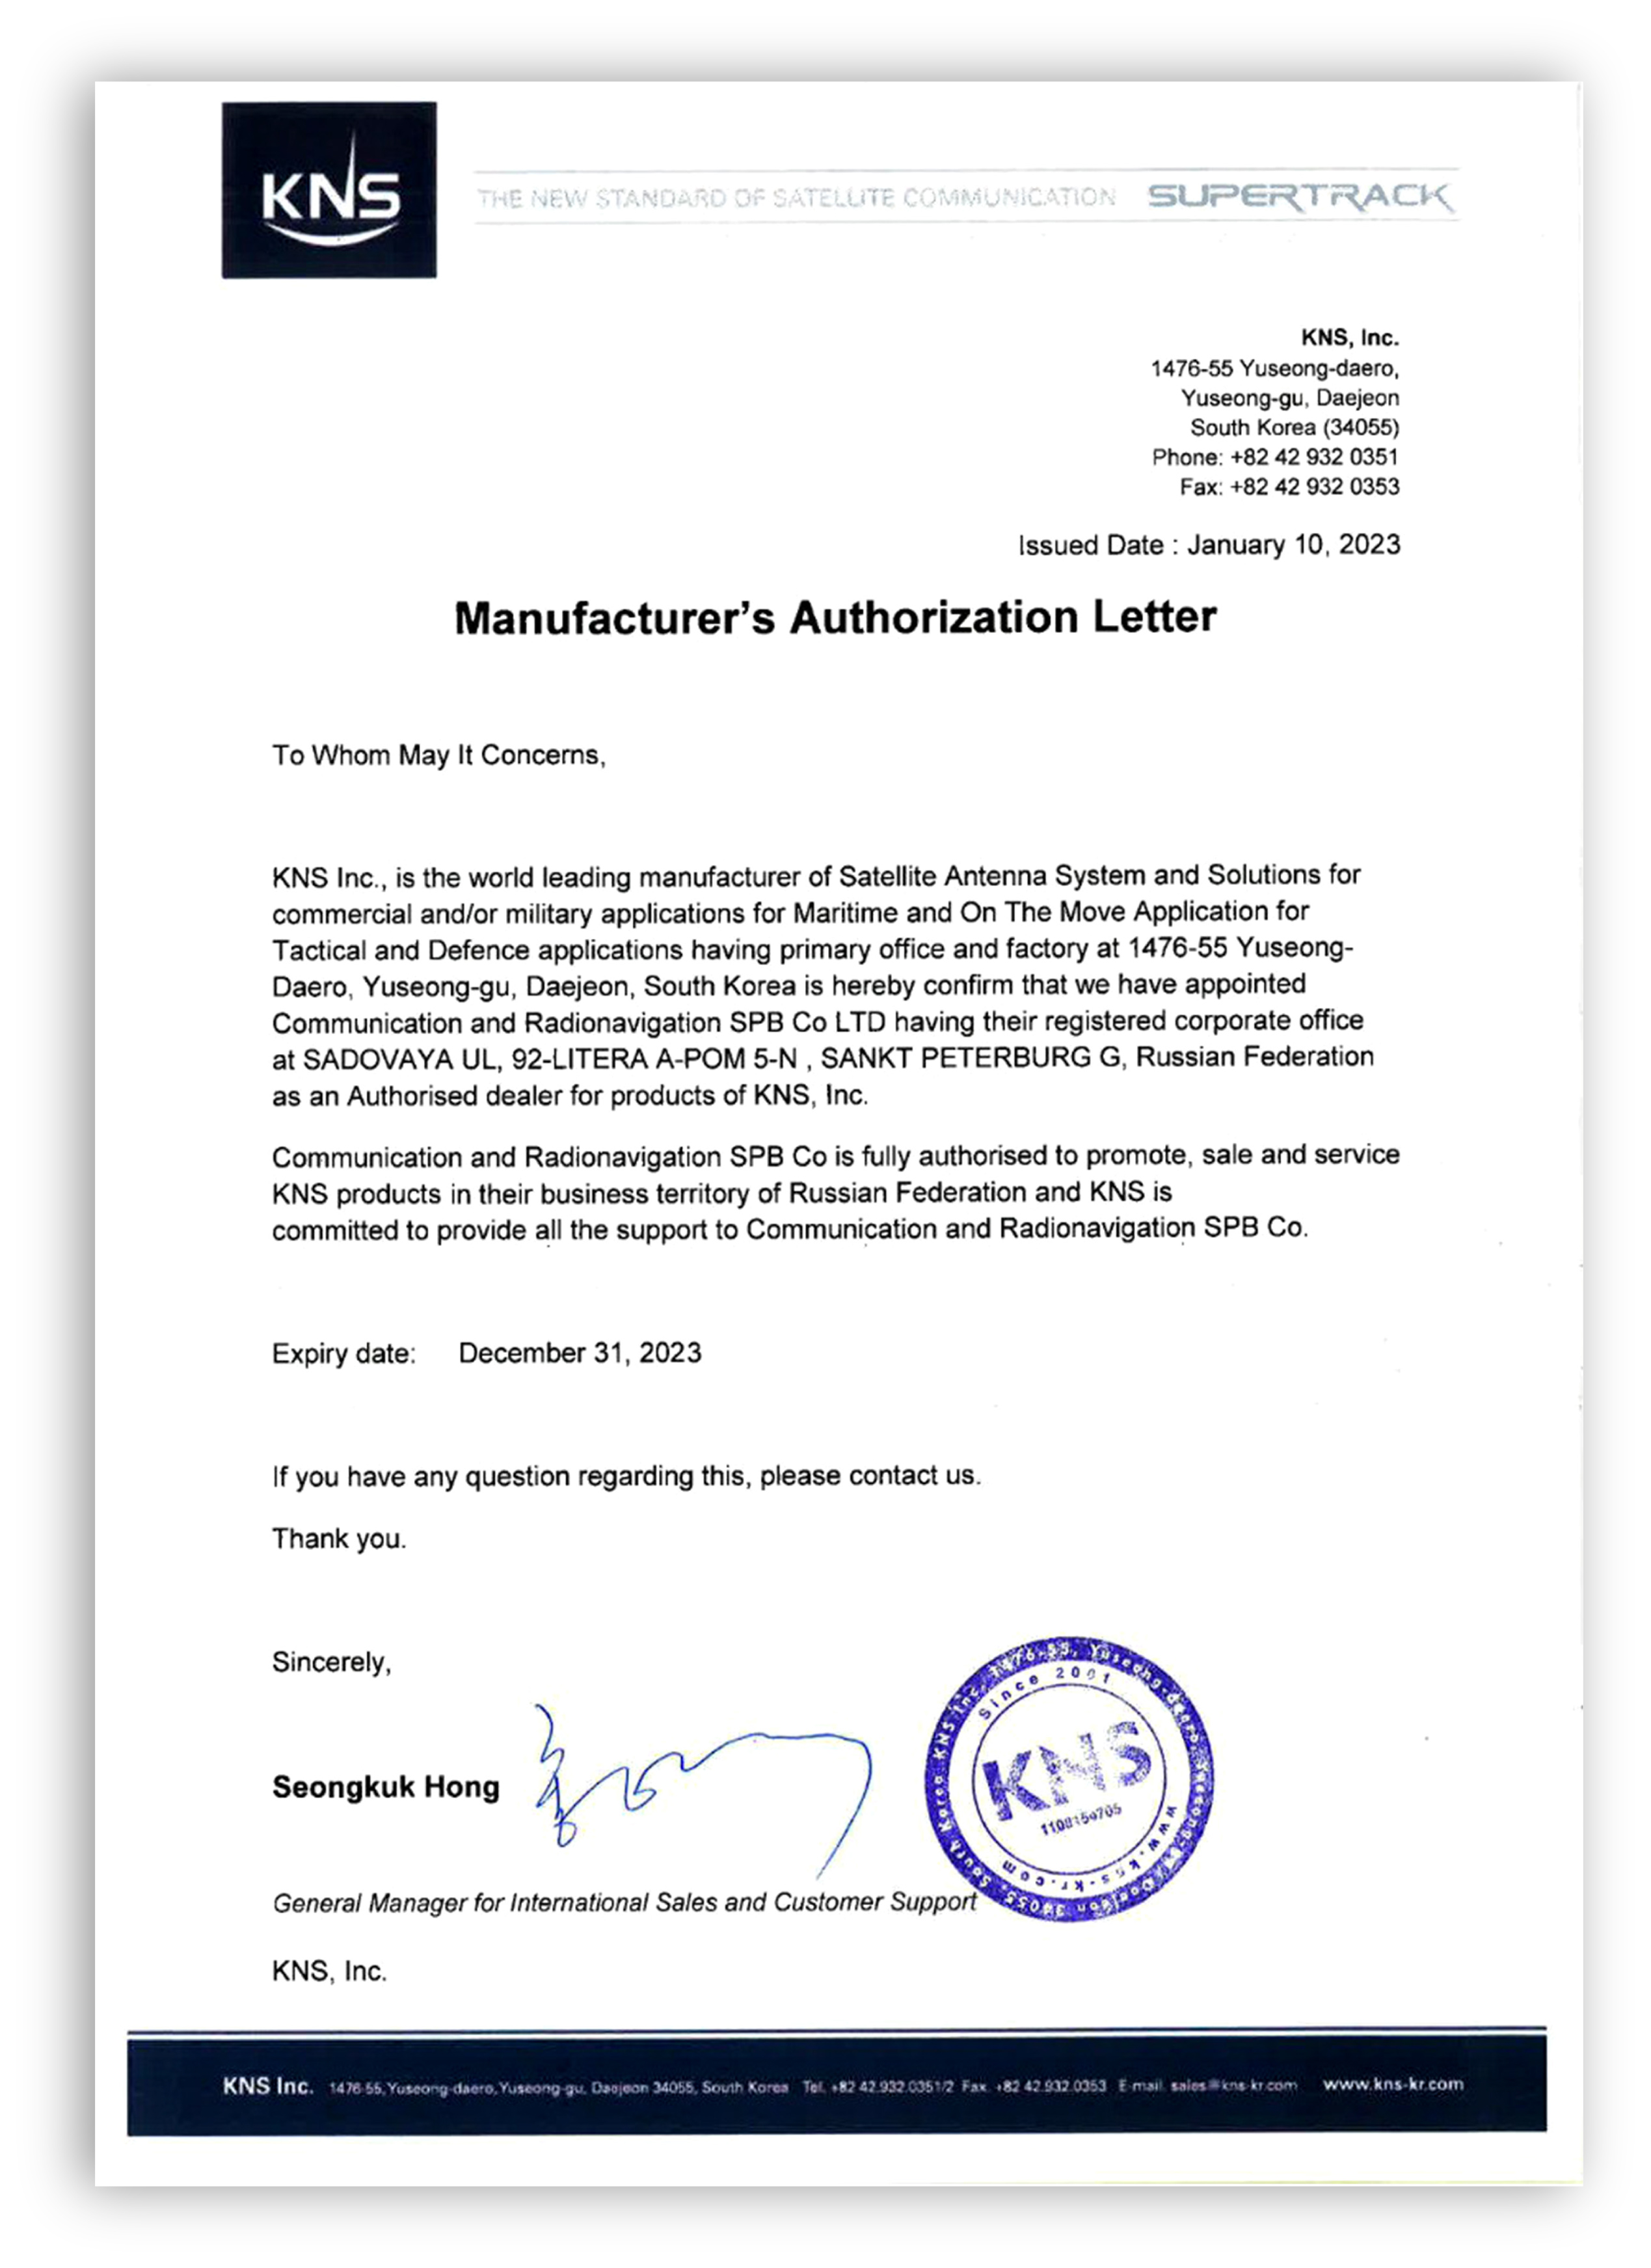 Manufacturer's Authorization Letter KNS